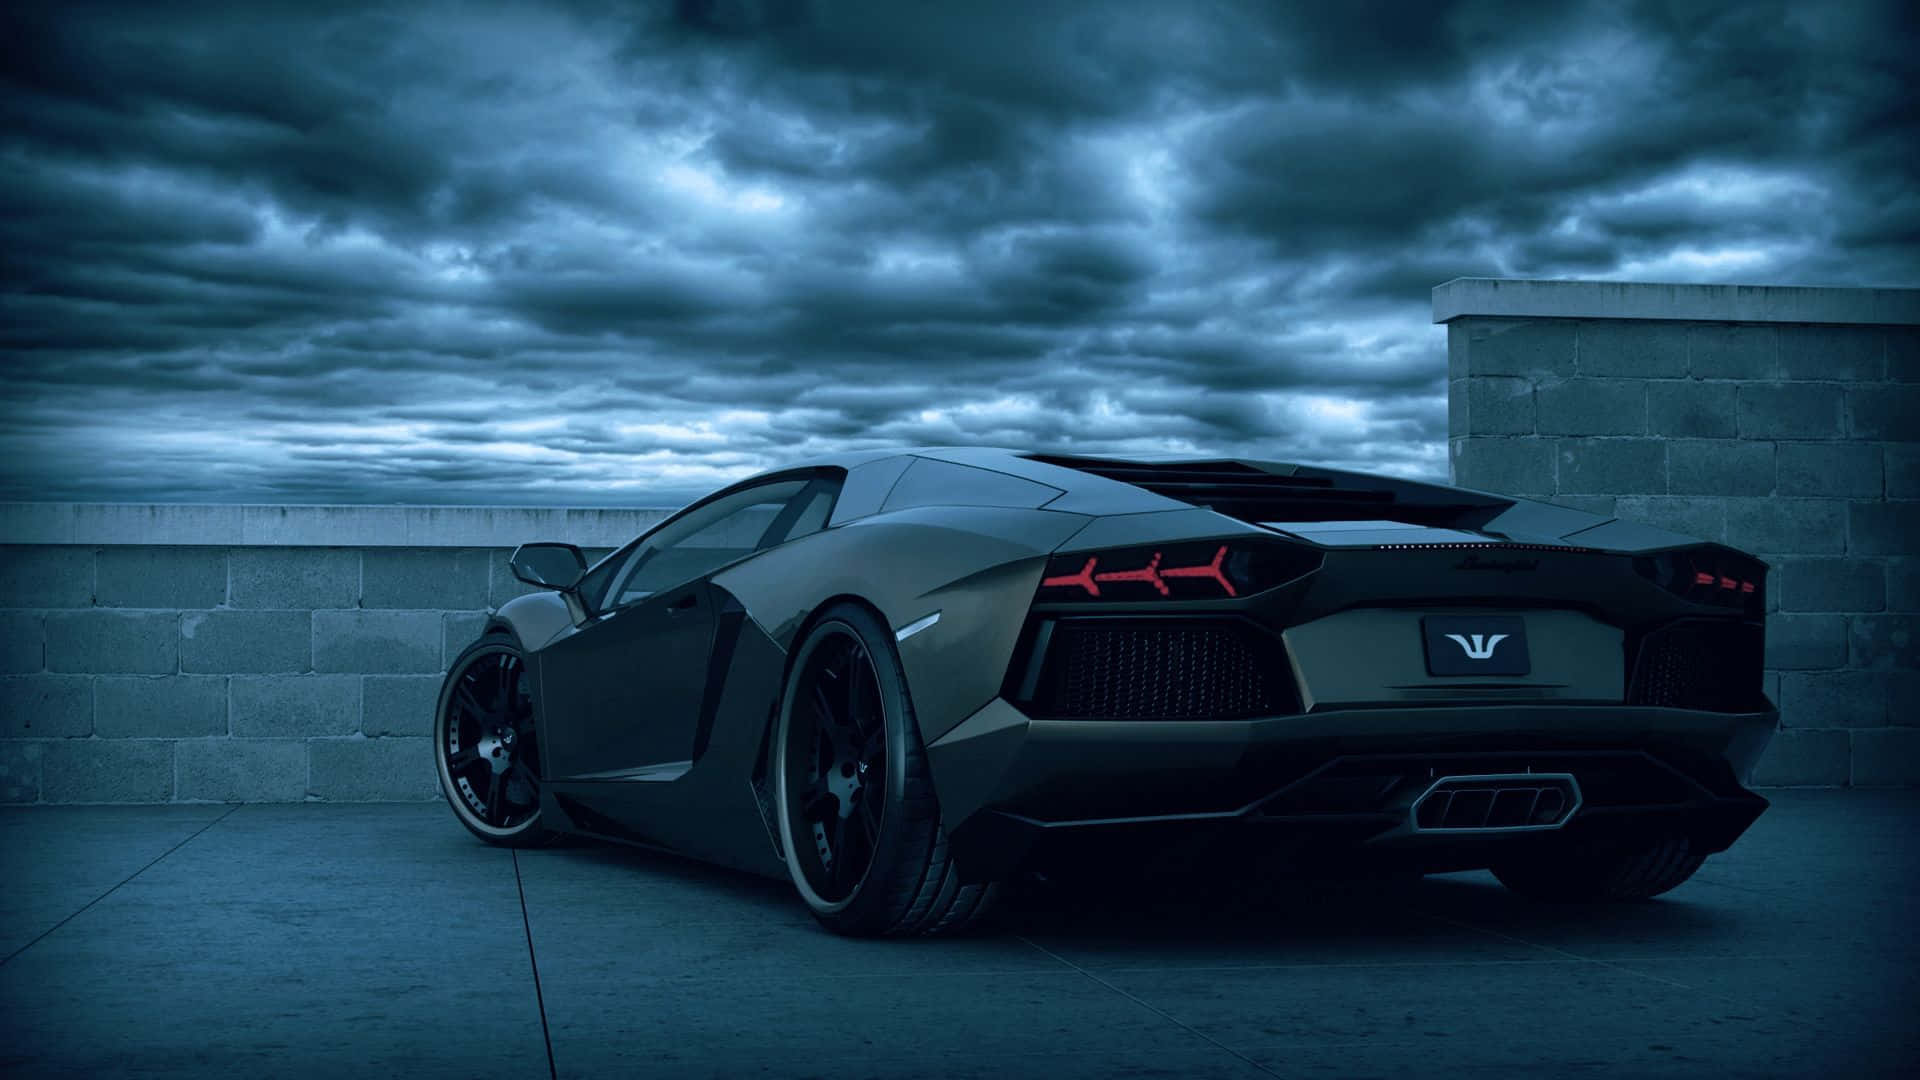 Oplev det kølige og sporty design af en Lamborghini Desktop Wallpaper. Wallpaper